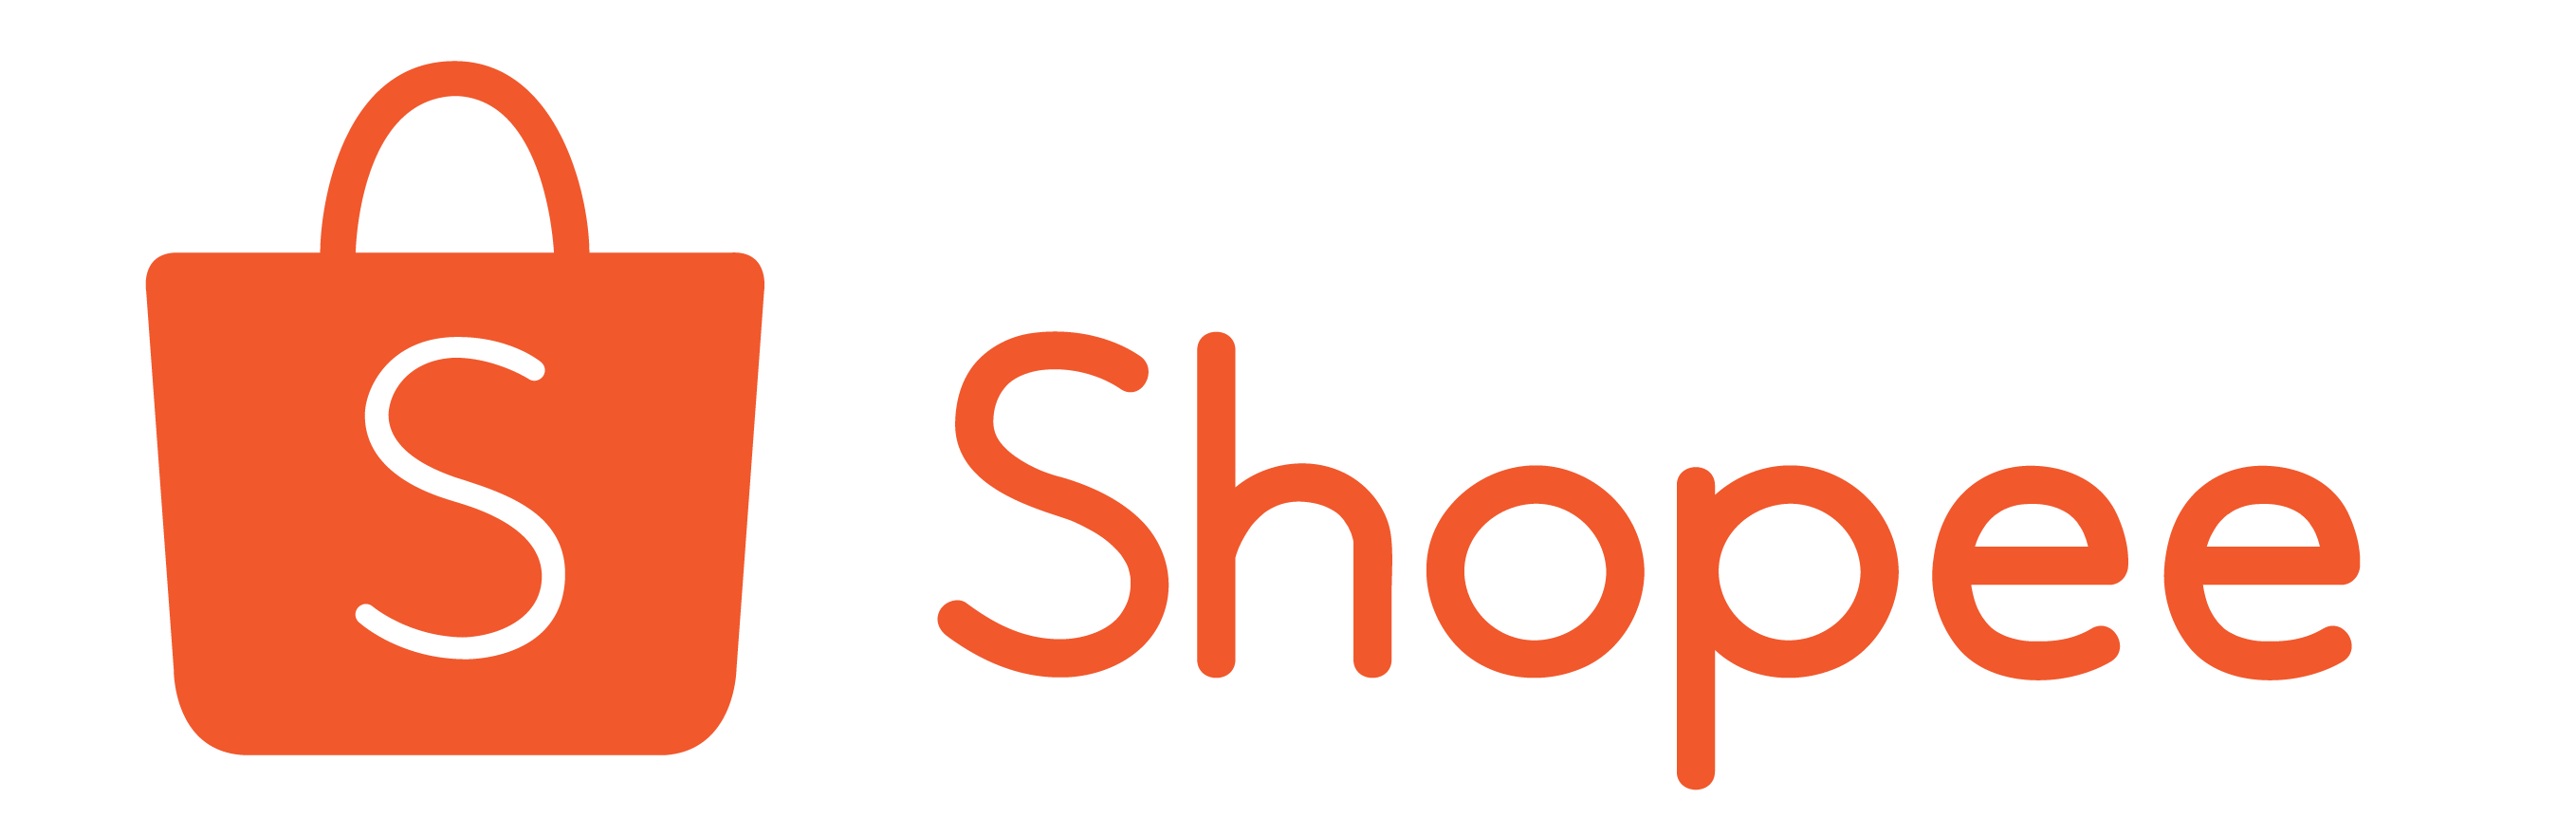 Shopee Png Logo Black - Mantan Jancok